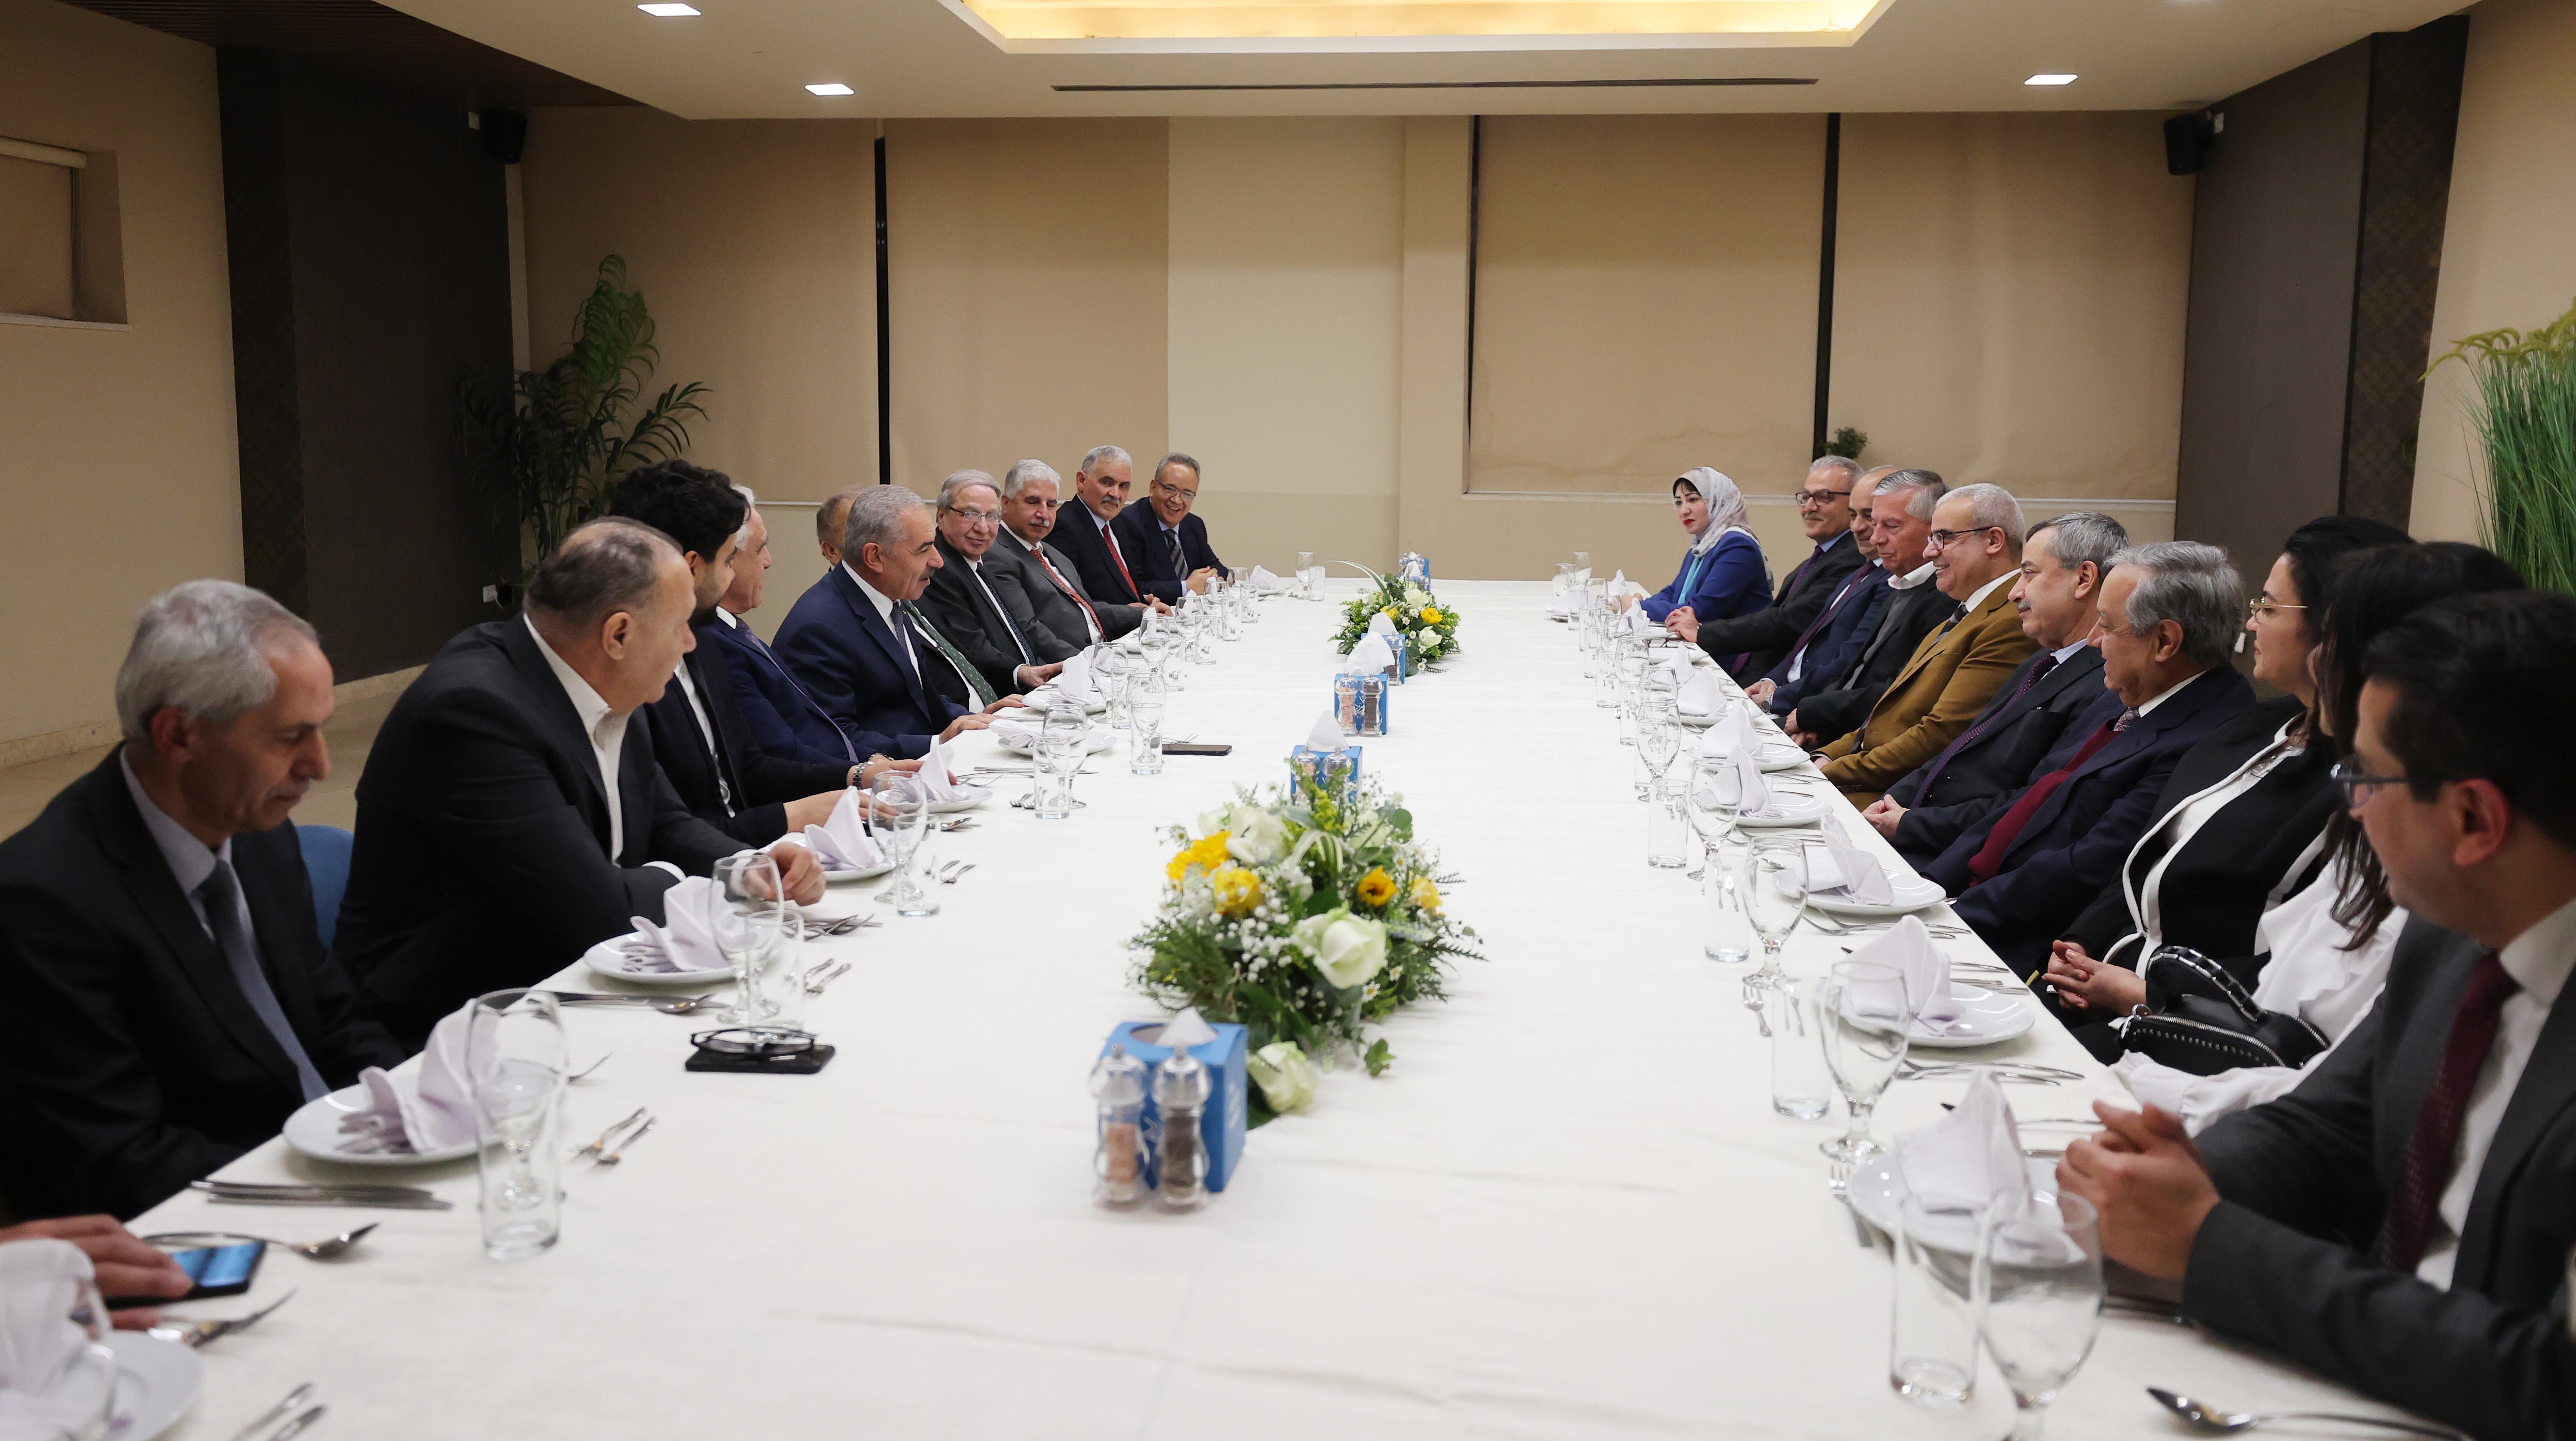 رجال أعمال من ليبيا في لقاء مع رئيس الوزراء محمد اشتية برام الله (تصوير: شاد حاتم)